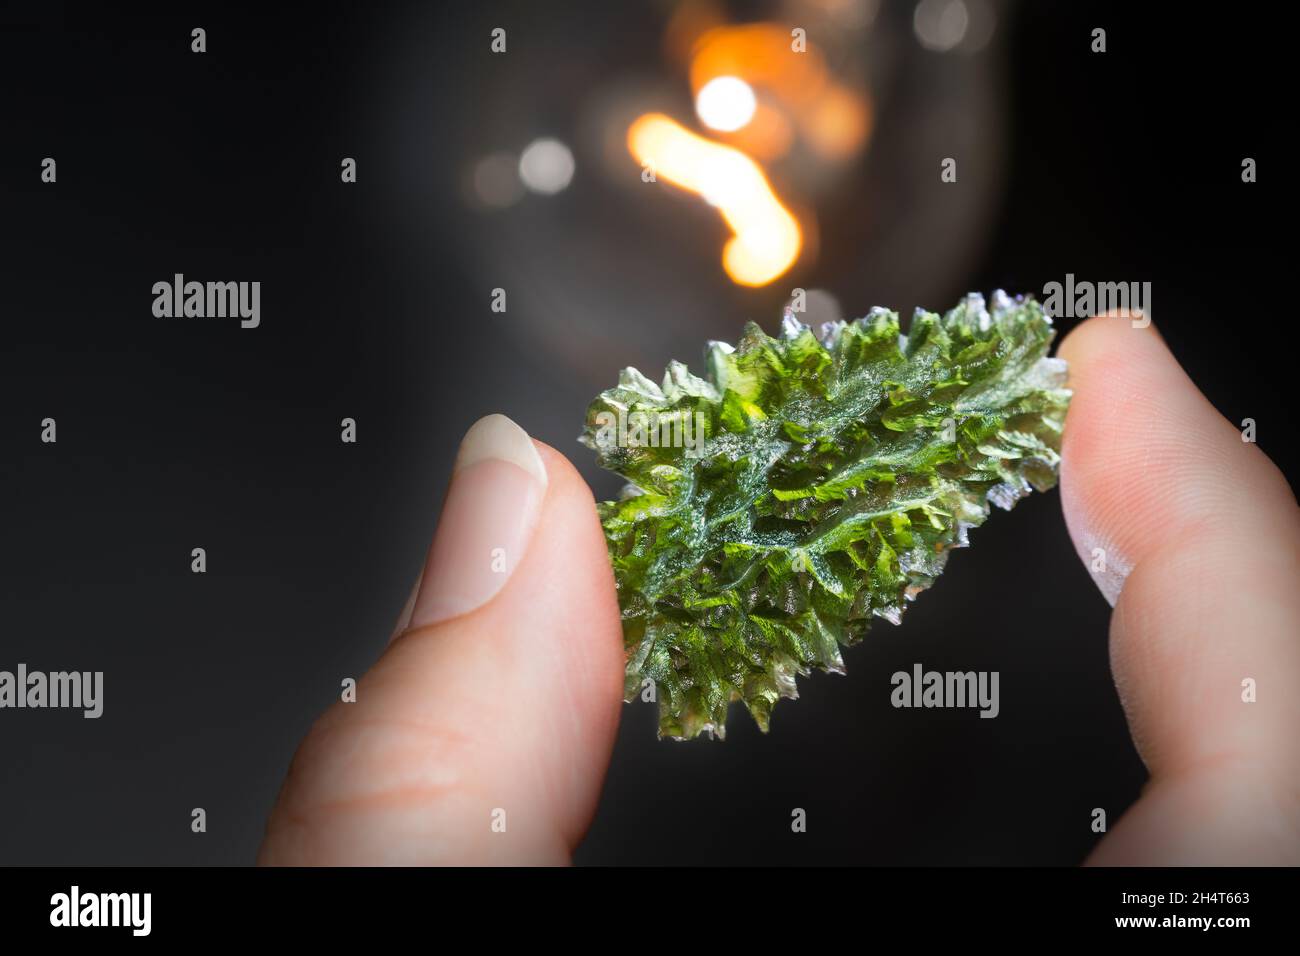 Seltener grüner Moldavit-Edelstein in menschlichen Fingern mit Glühlampe auf schwarzem Hintergrund. Nahaufnahme von schönem Edelstein aus faltenem kometenhaften Glas. Stockfoto